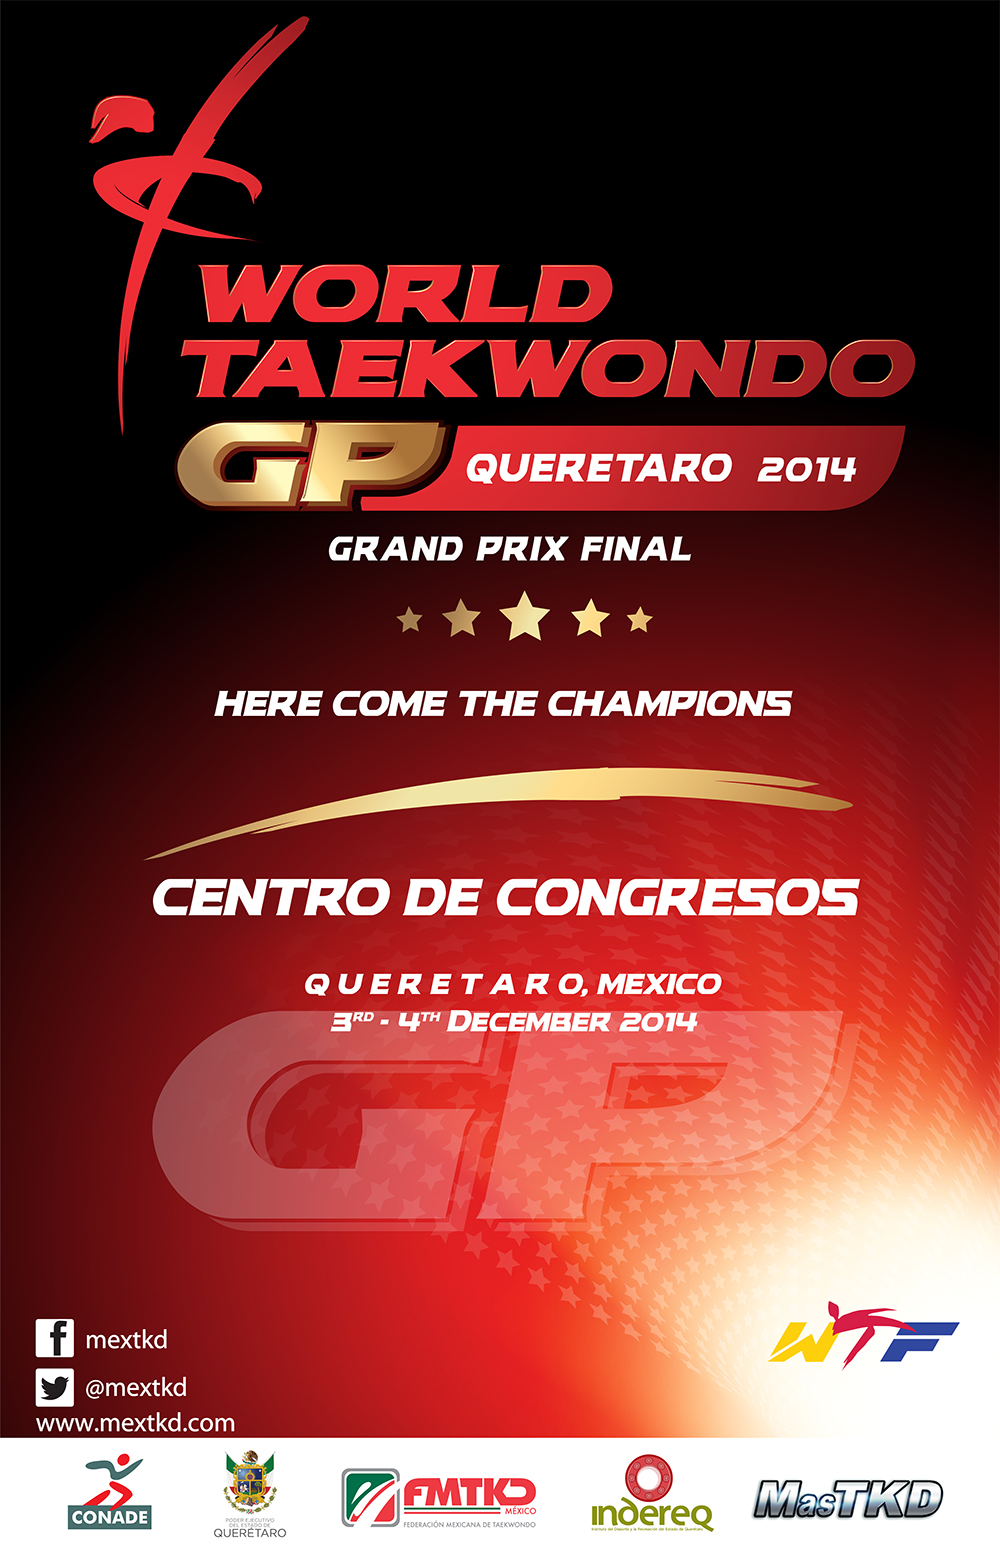 Cartel Grand Prix Final, Queretaro 2014